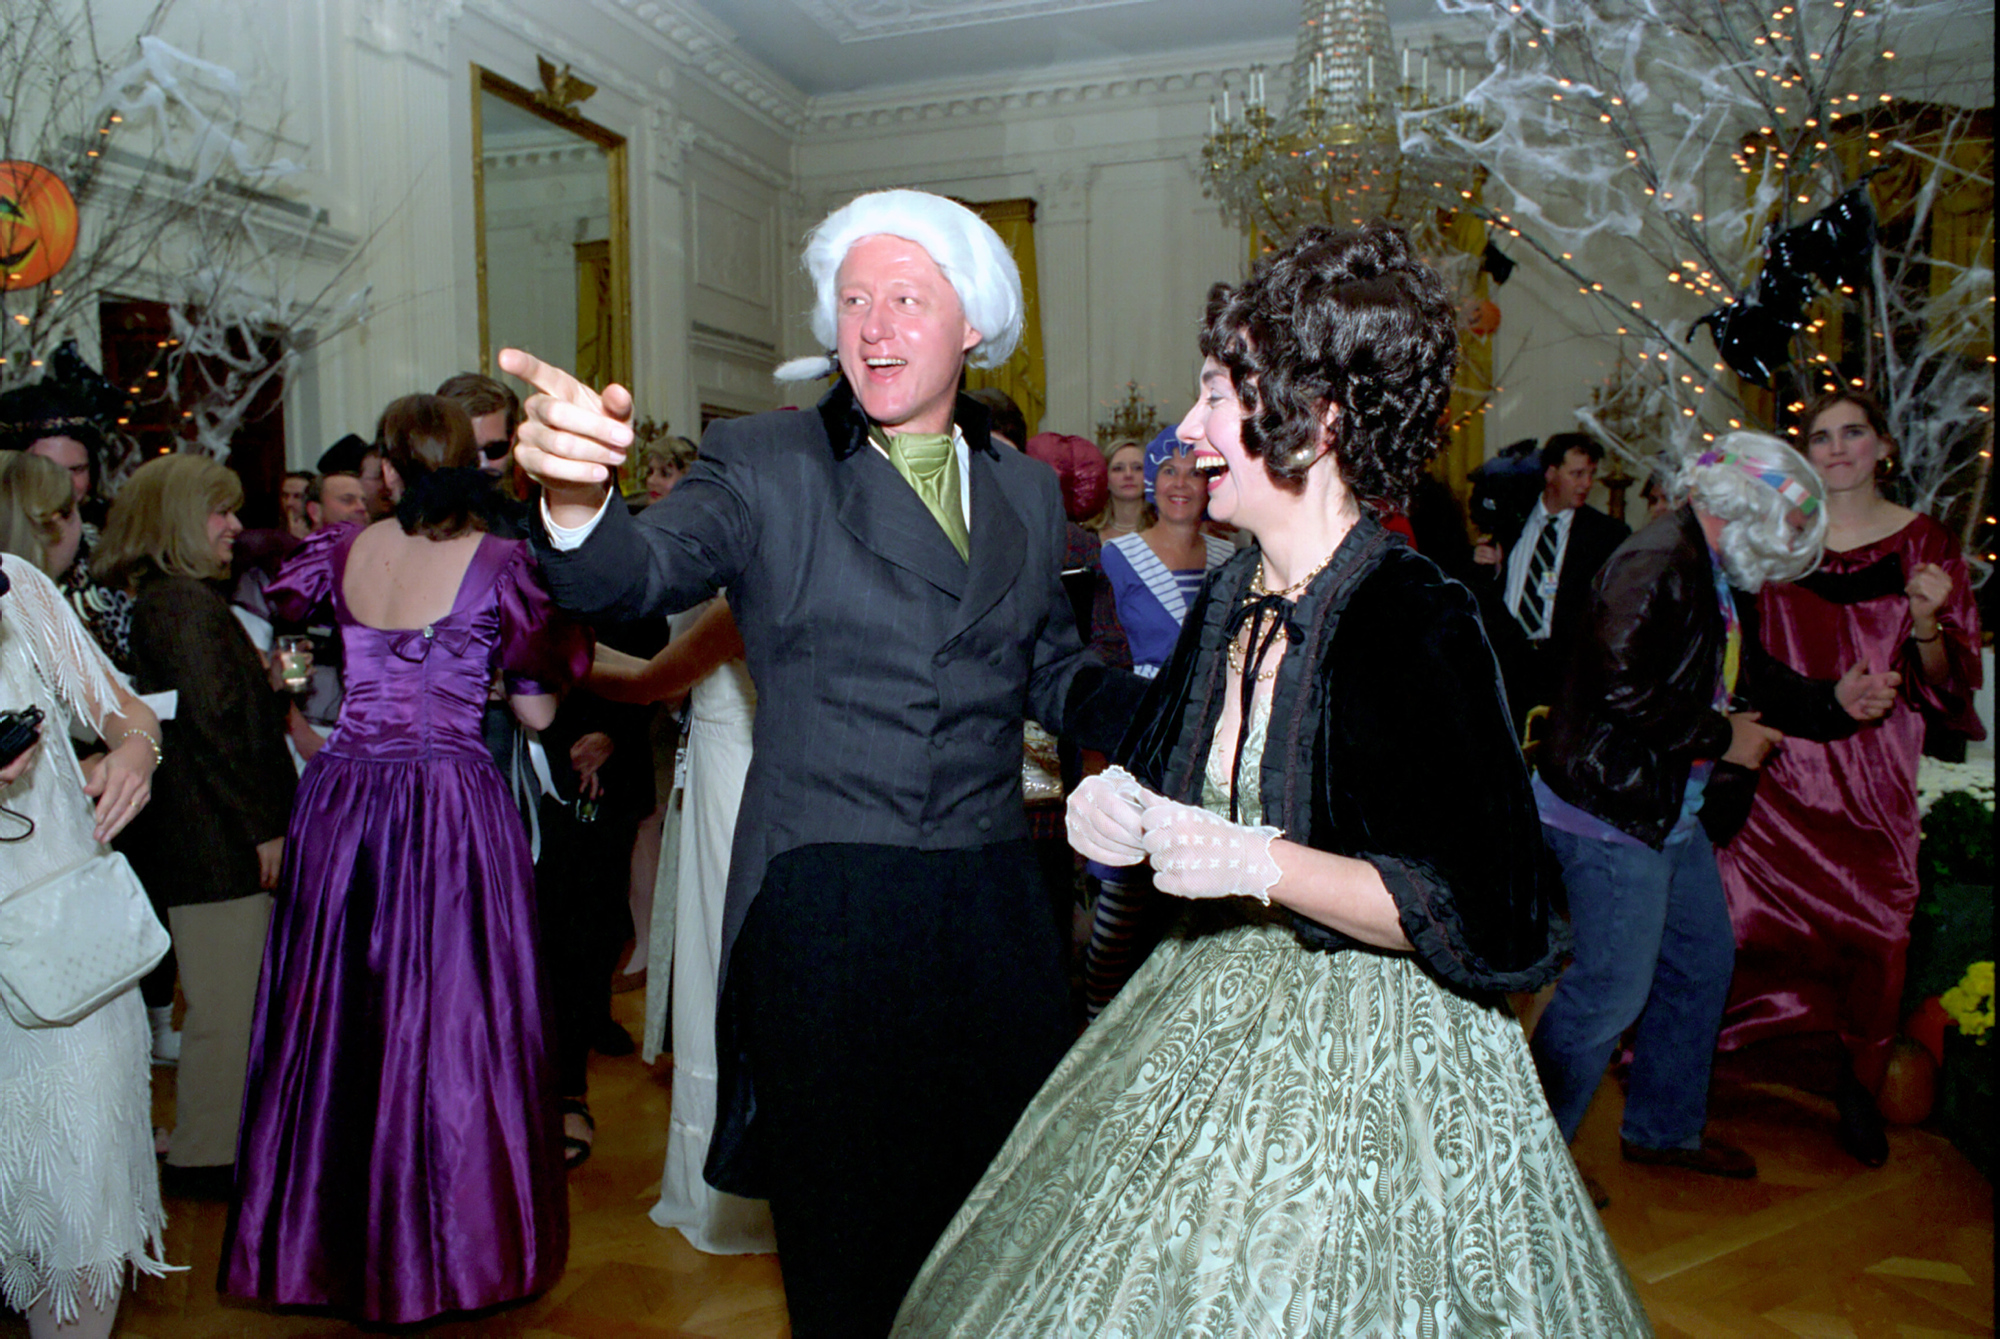 Tổng thống Clinton và Đệ nhất phu nhân Hillary Clinton hóa trang thành Tổng thống và Đệ nhất phu nhân James và Dolley Madison dự tiệc Halloween tại Phòng Đông của Nhà Trắng.